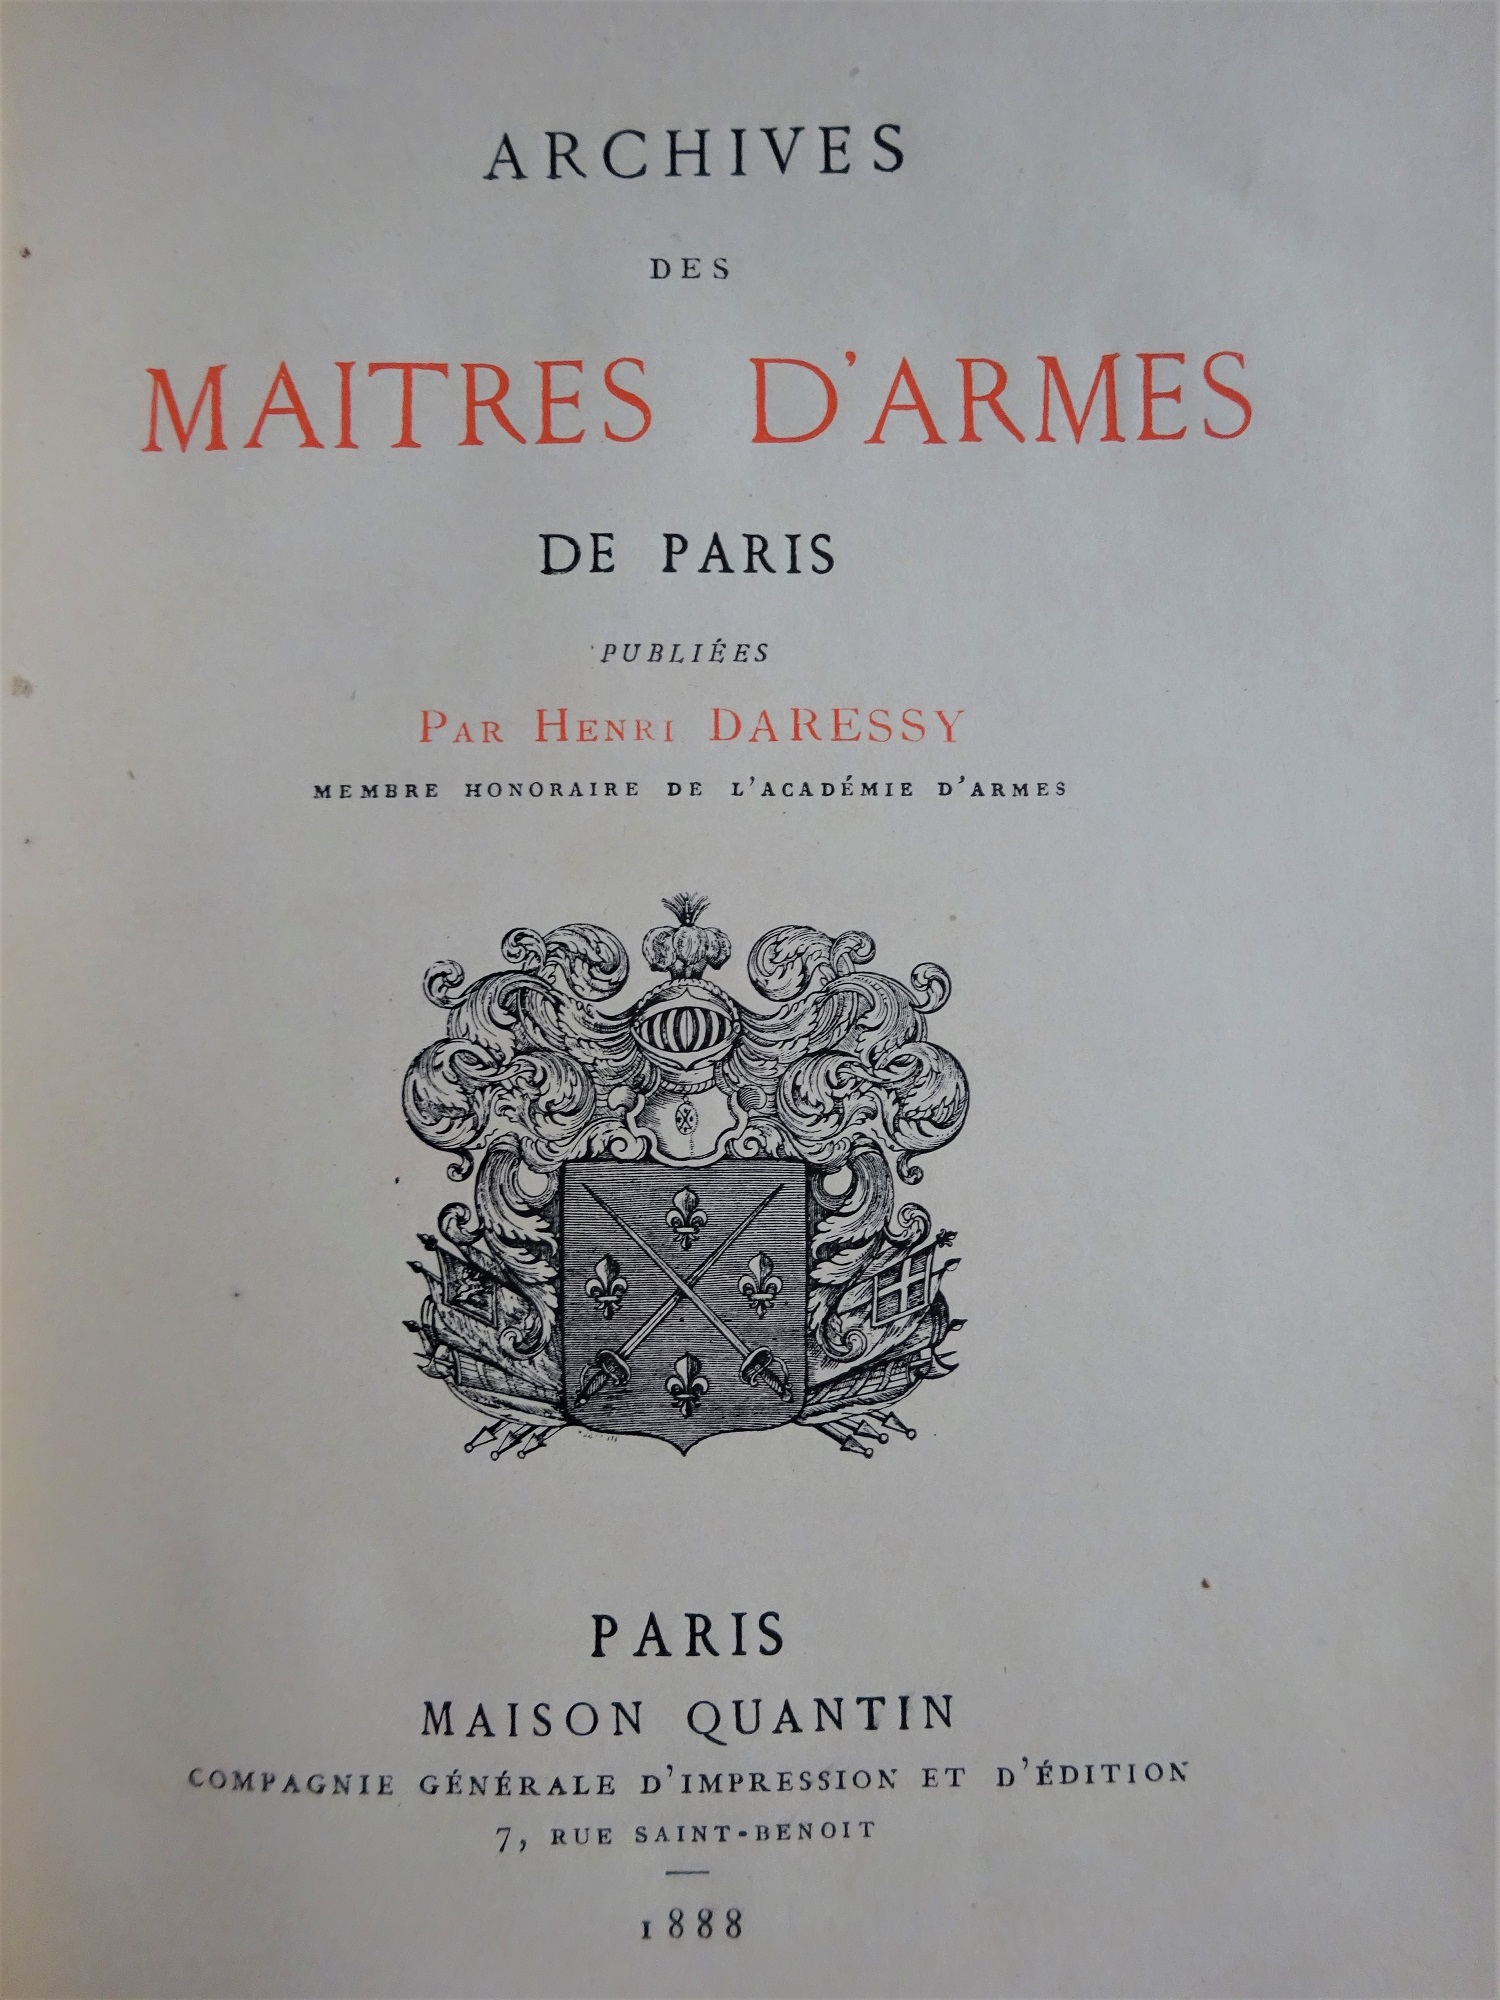 Archives des maîtres d'armes de Paris